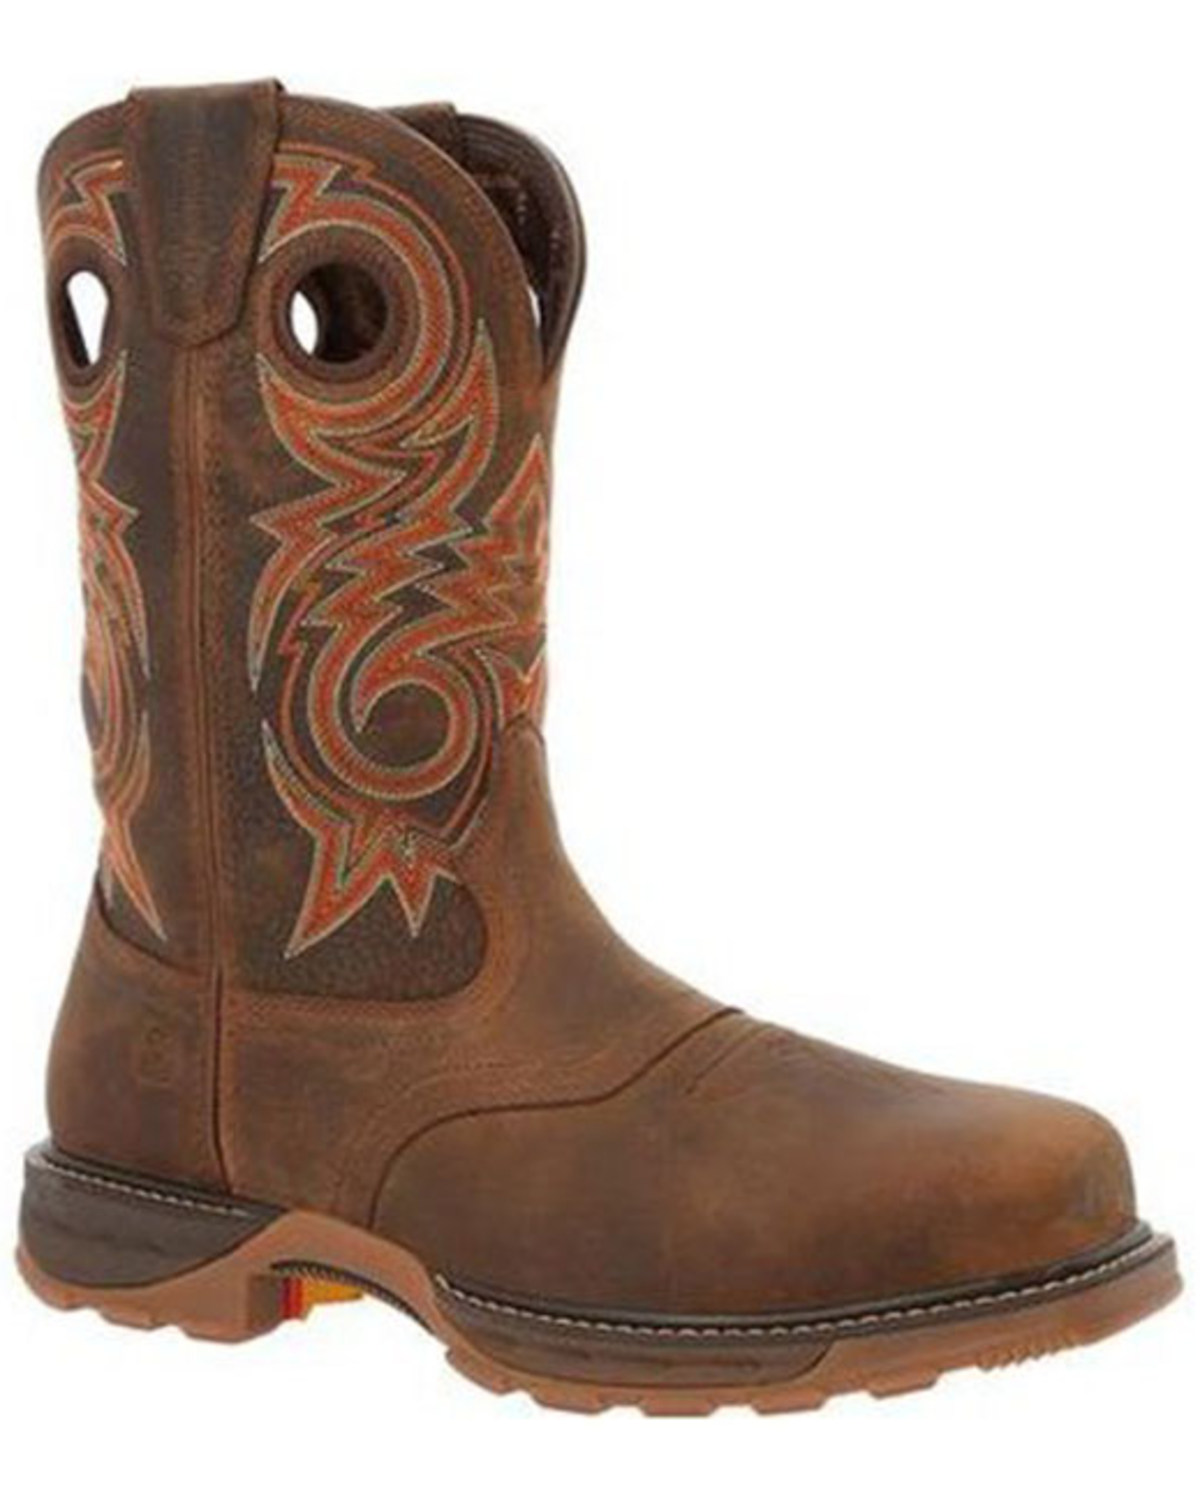 Durango Men's Saddle Waterproof Western Work Boots - Composite Toe